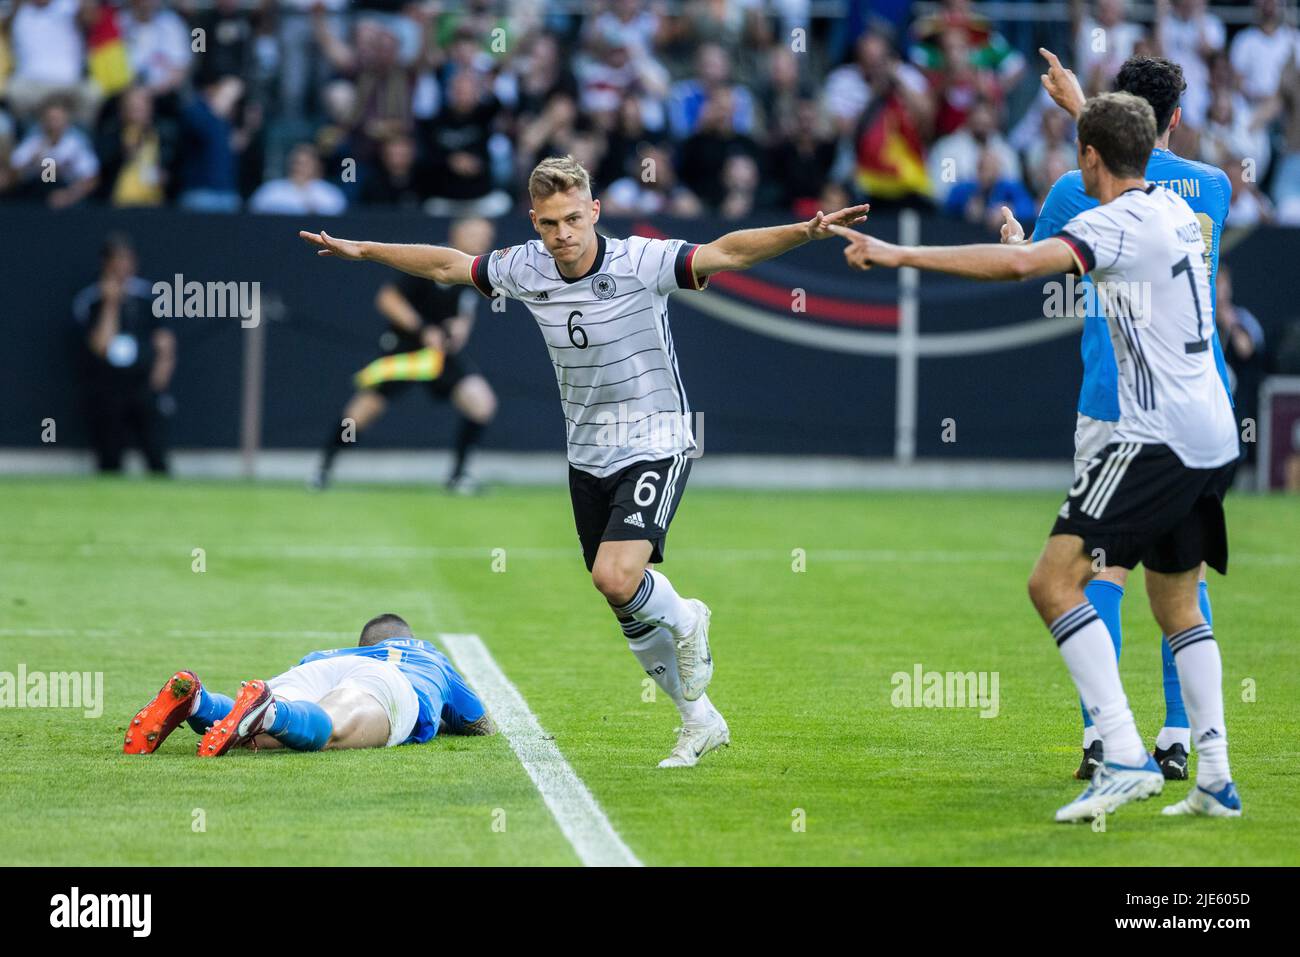 Mönchengladbach, Borussia-Park, 14.06.22: Joshua Kimmich (Deutschland) schiesst das 1:0 Tor und jubelt beim Länderspiel zwischen Deutschland vs. Itali Stock Photo